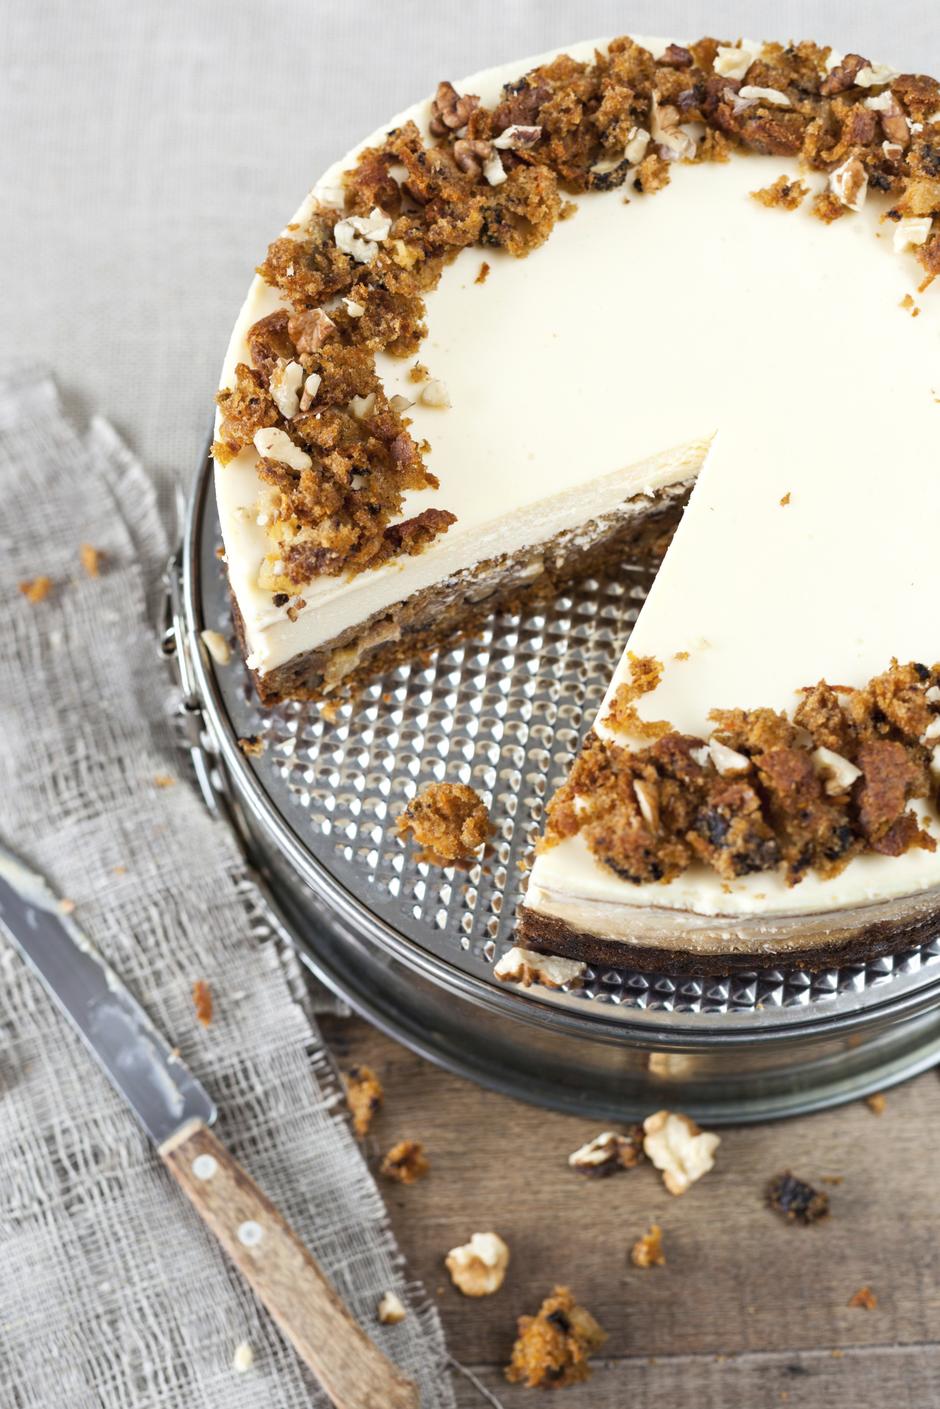 cheesecake mrkva torta | Author: Thinkstock